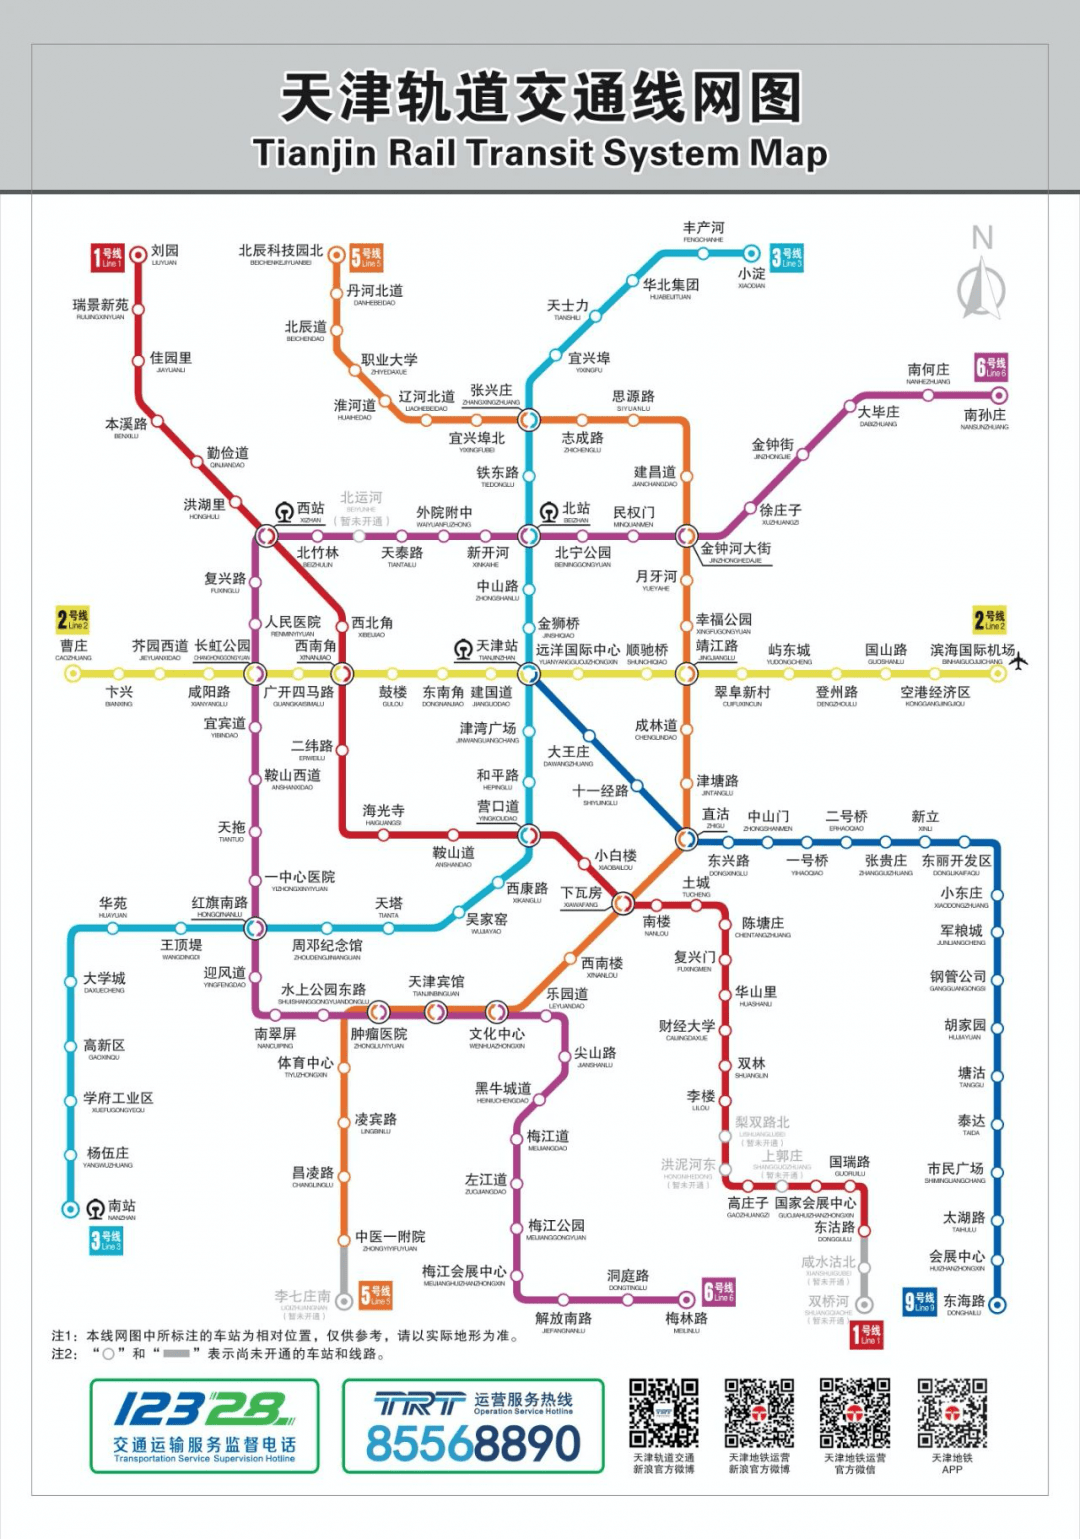 《2021天津交通指南》出炉,比地图还管用!再也